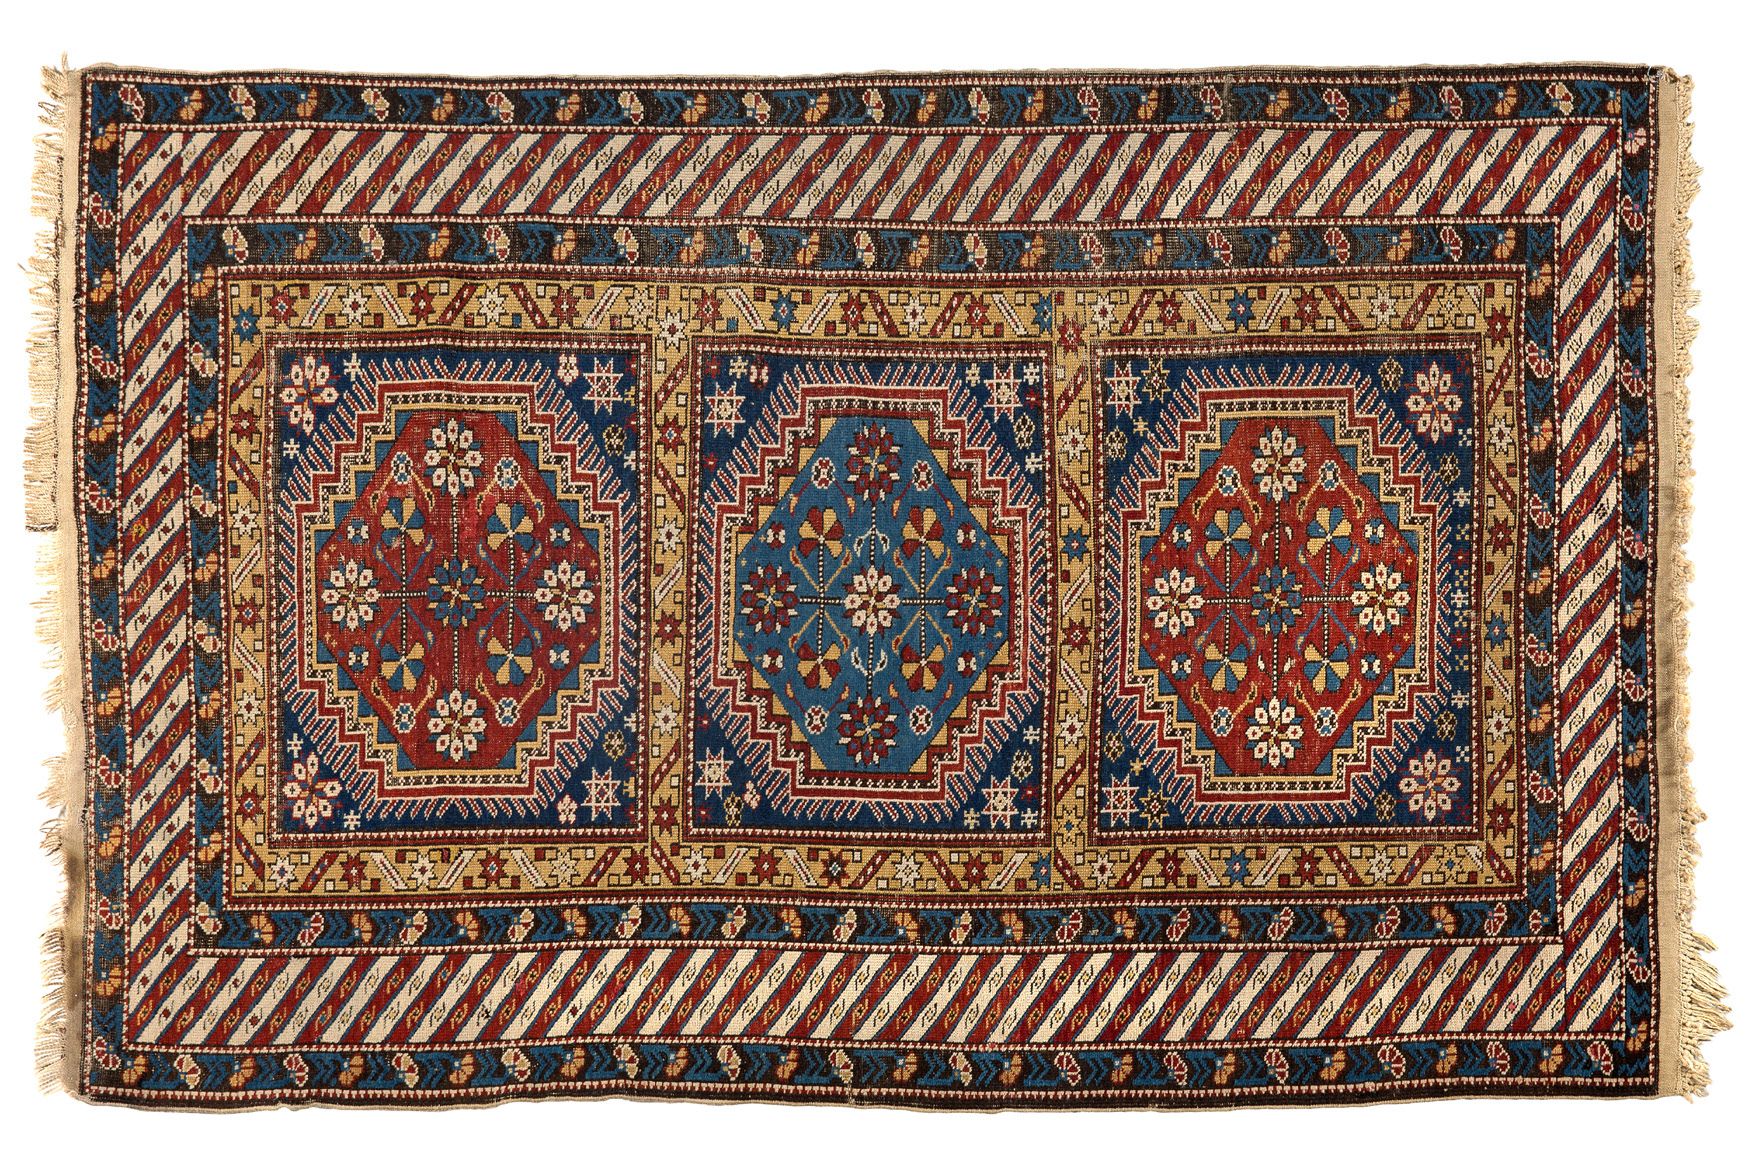 Null [TAPIS]
Fin Tchitchi (Caucase) fin XIXe siècle. Velours en laine sur fondat&hellip;